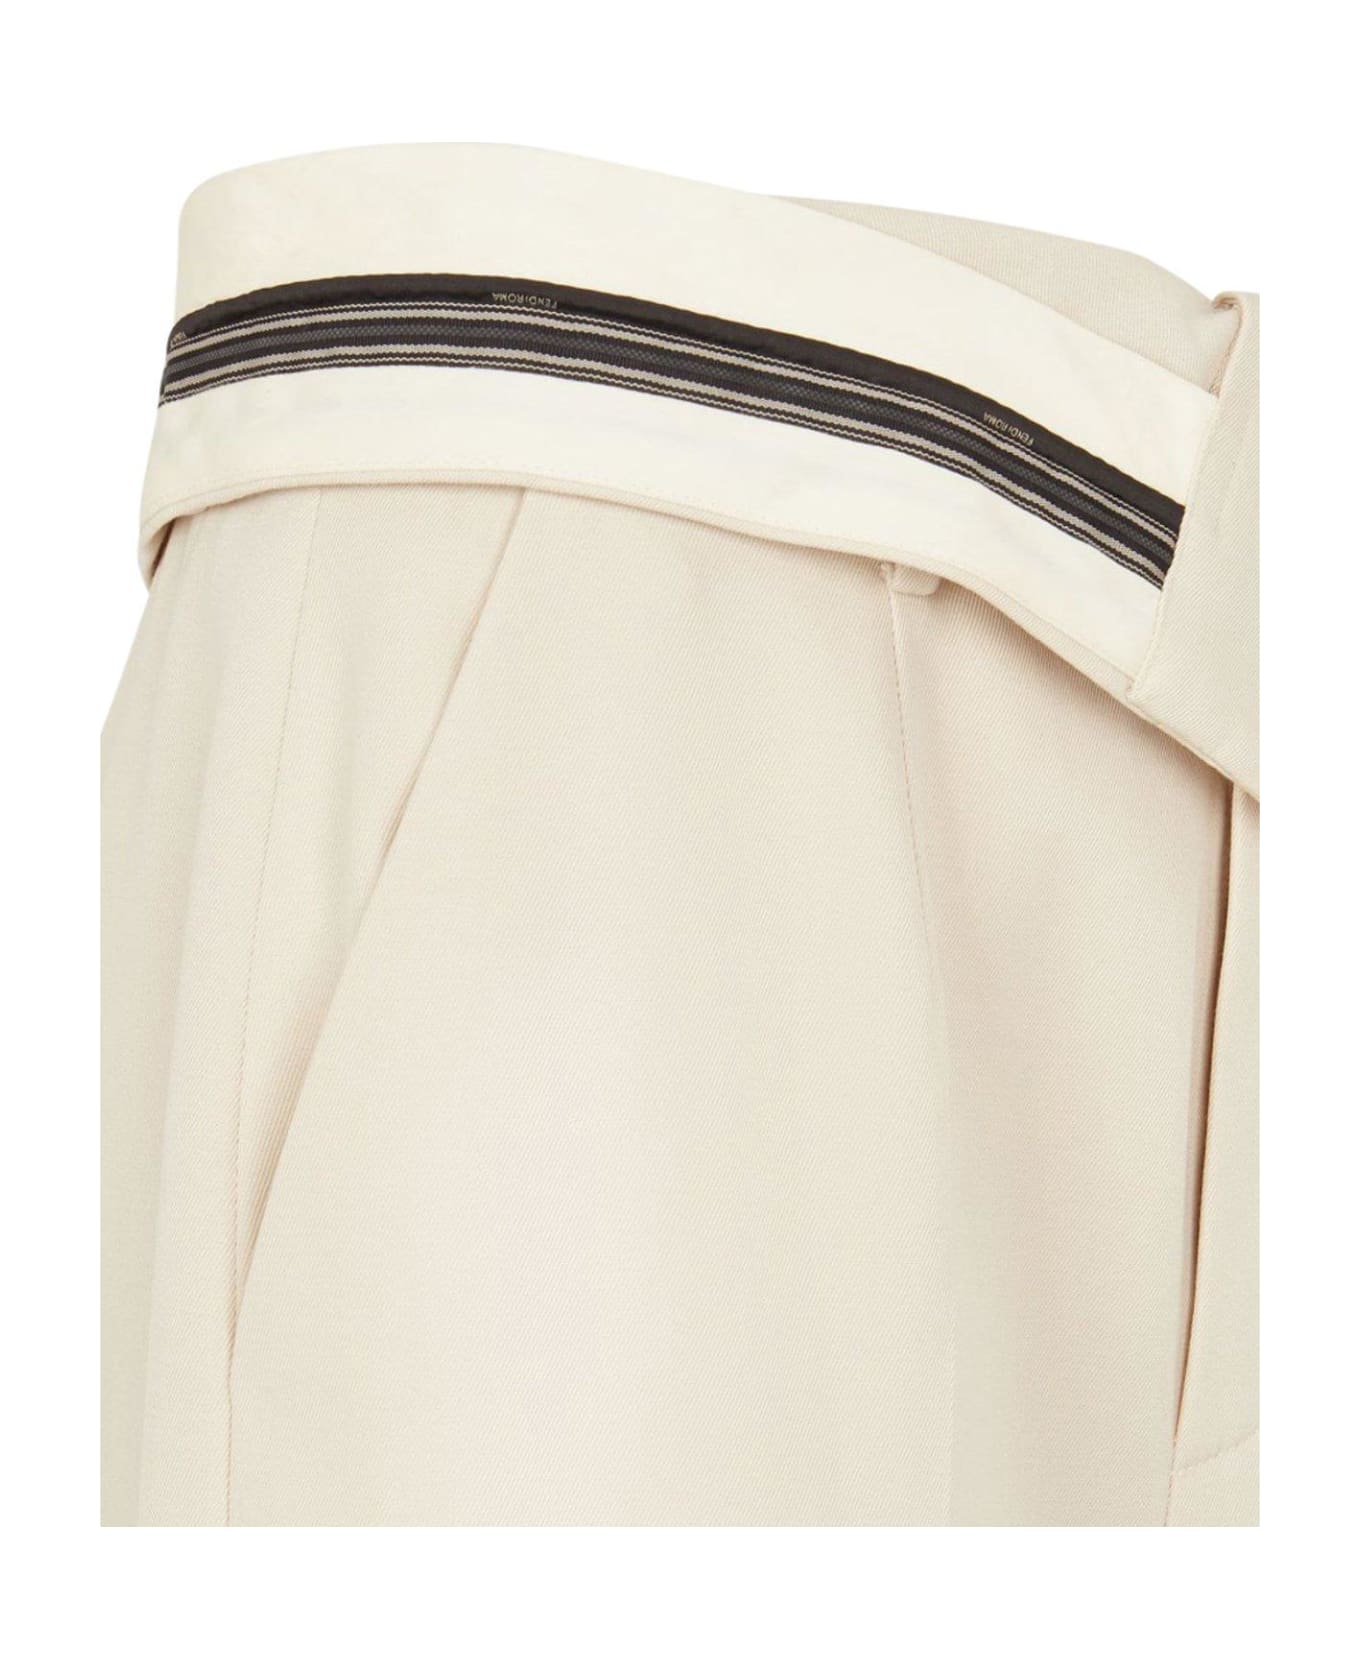 Fendi Pantalone Wool Cotton Trousers - Shell ボトムス